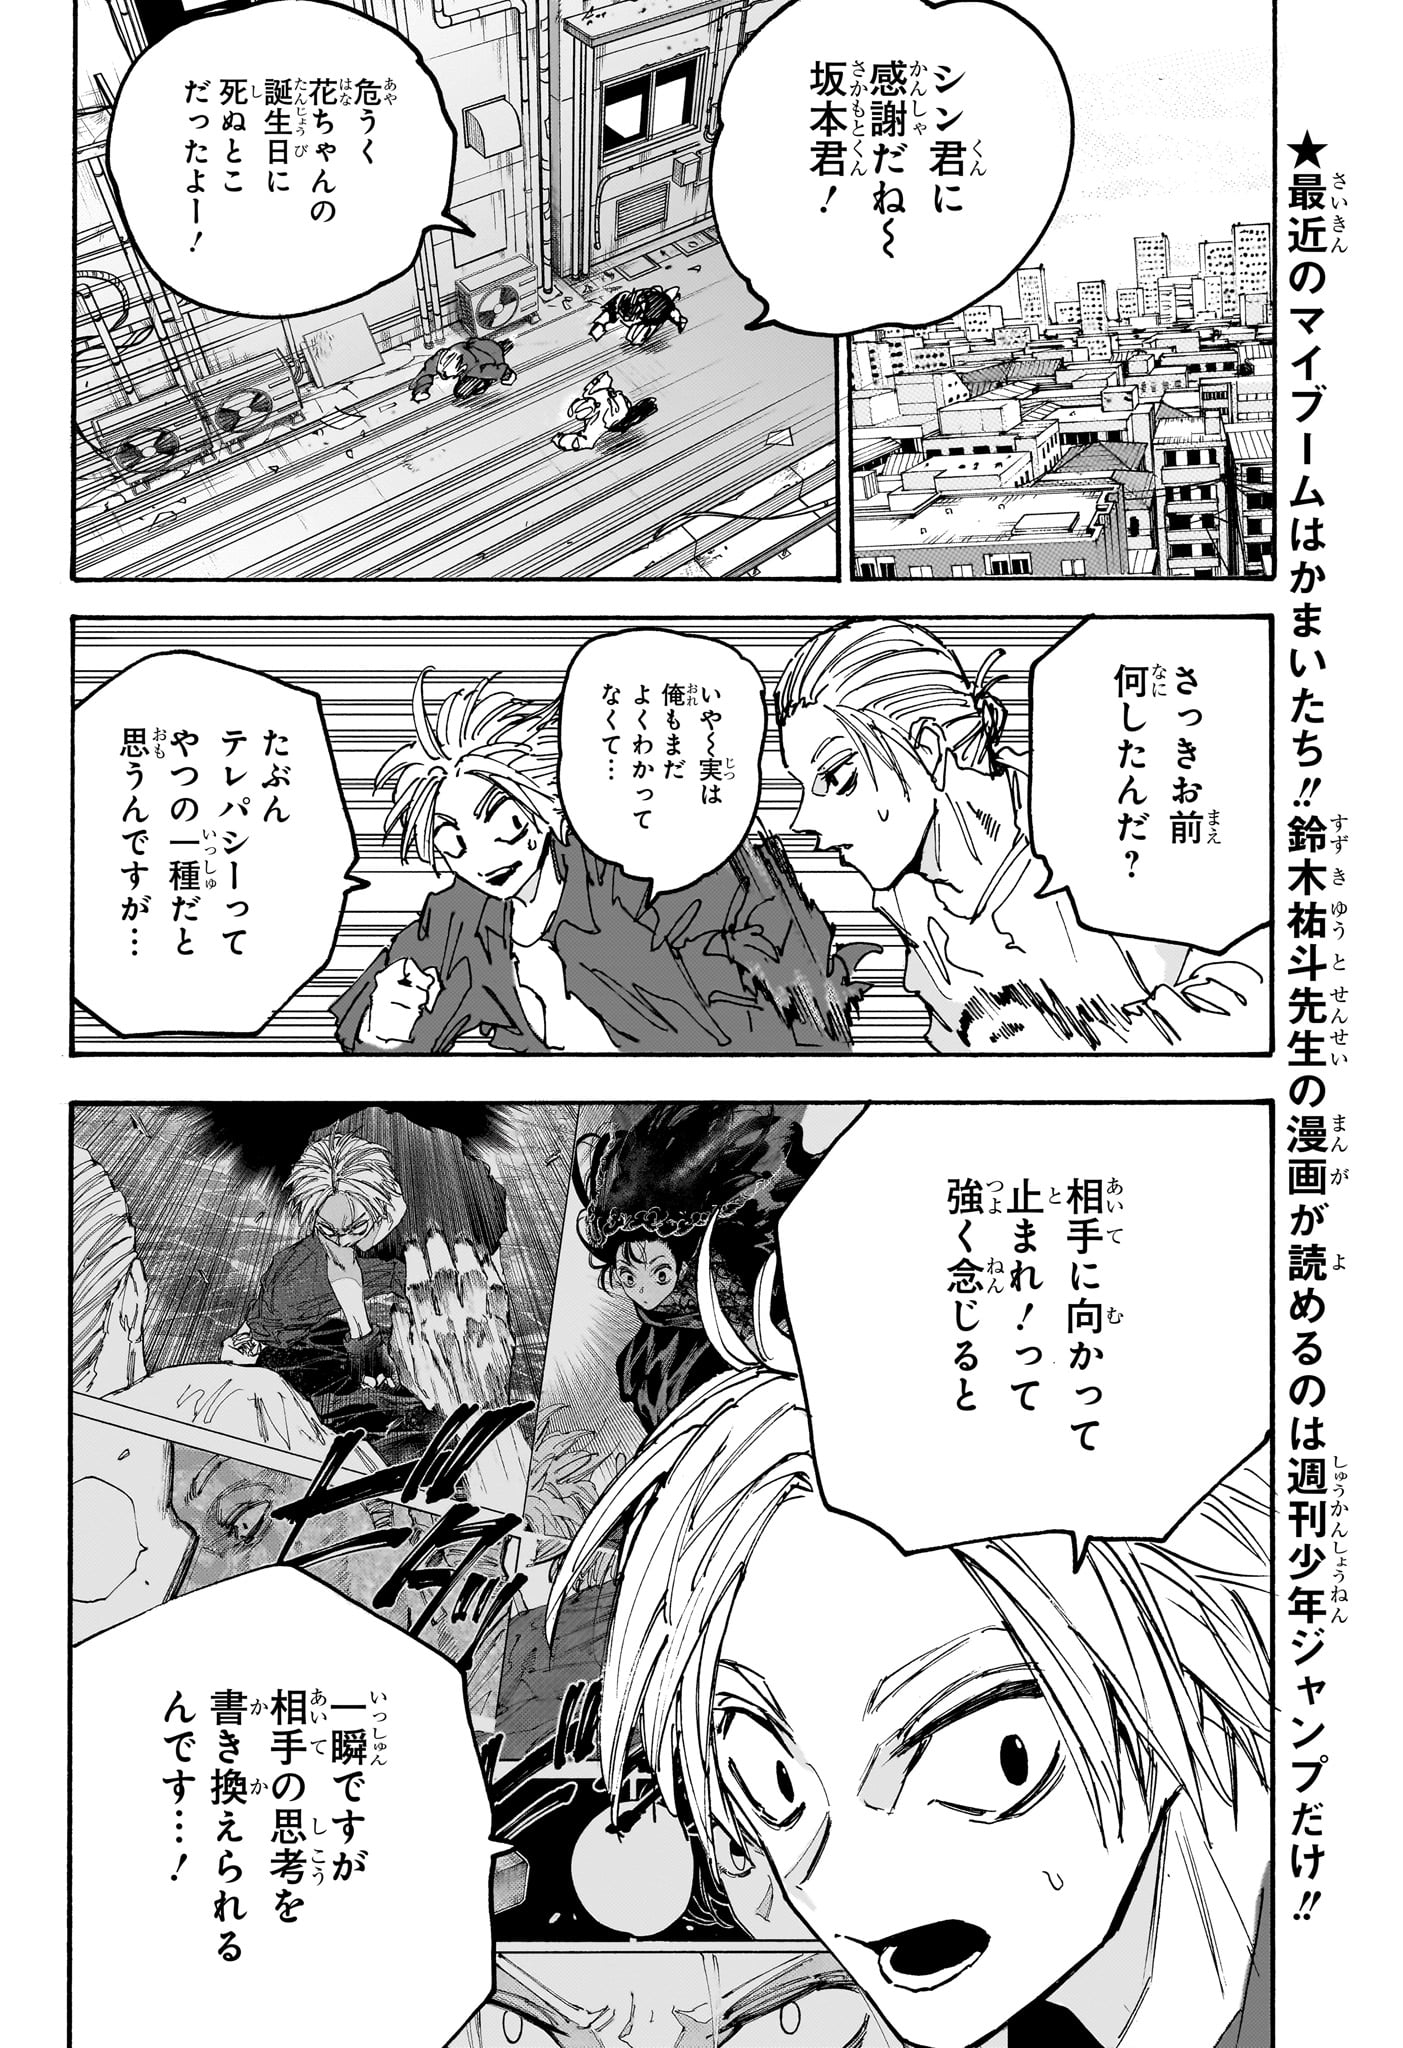 Sakamoto Days - Chapter 170 - Page 16